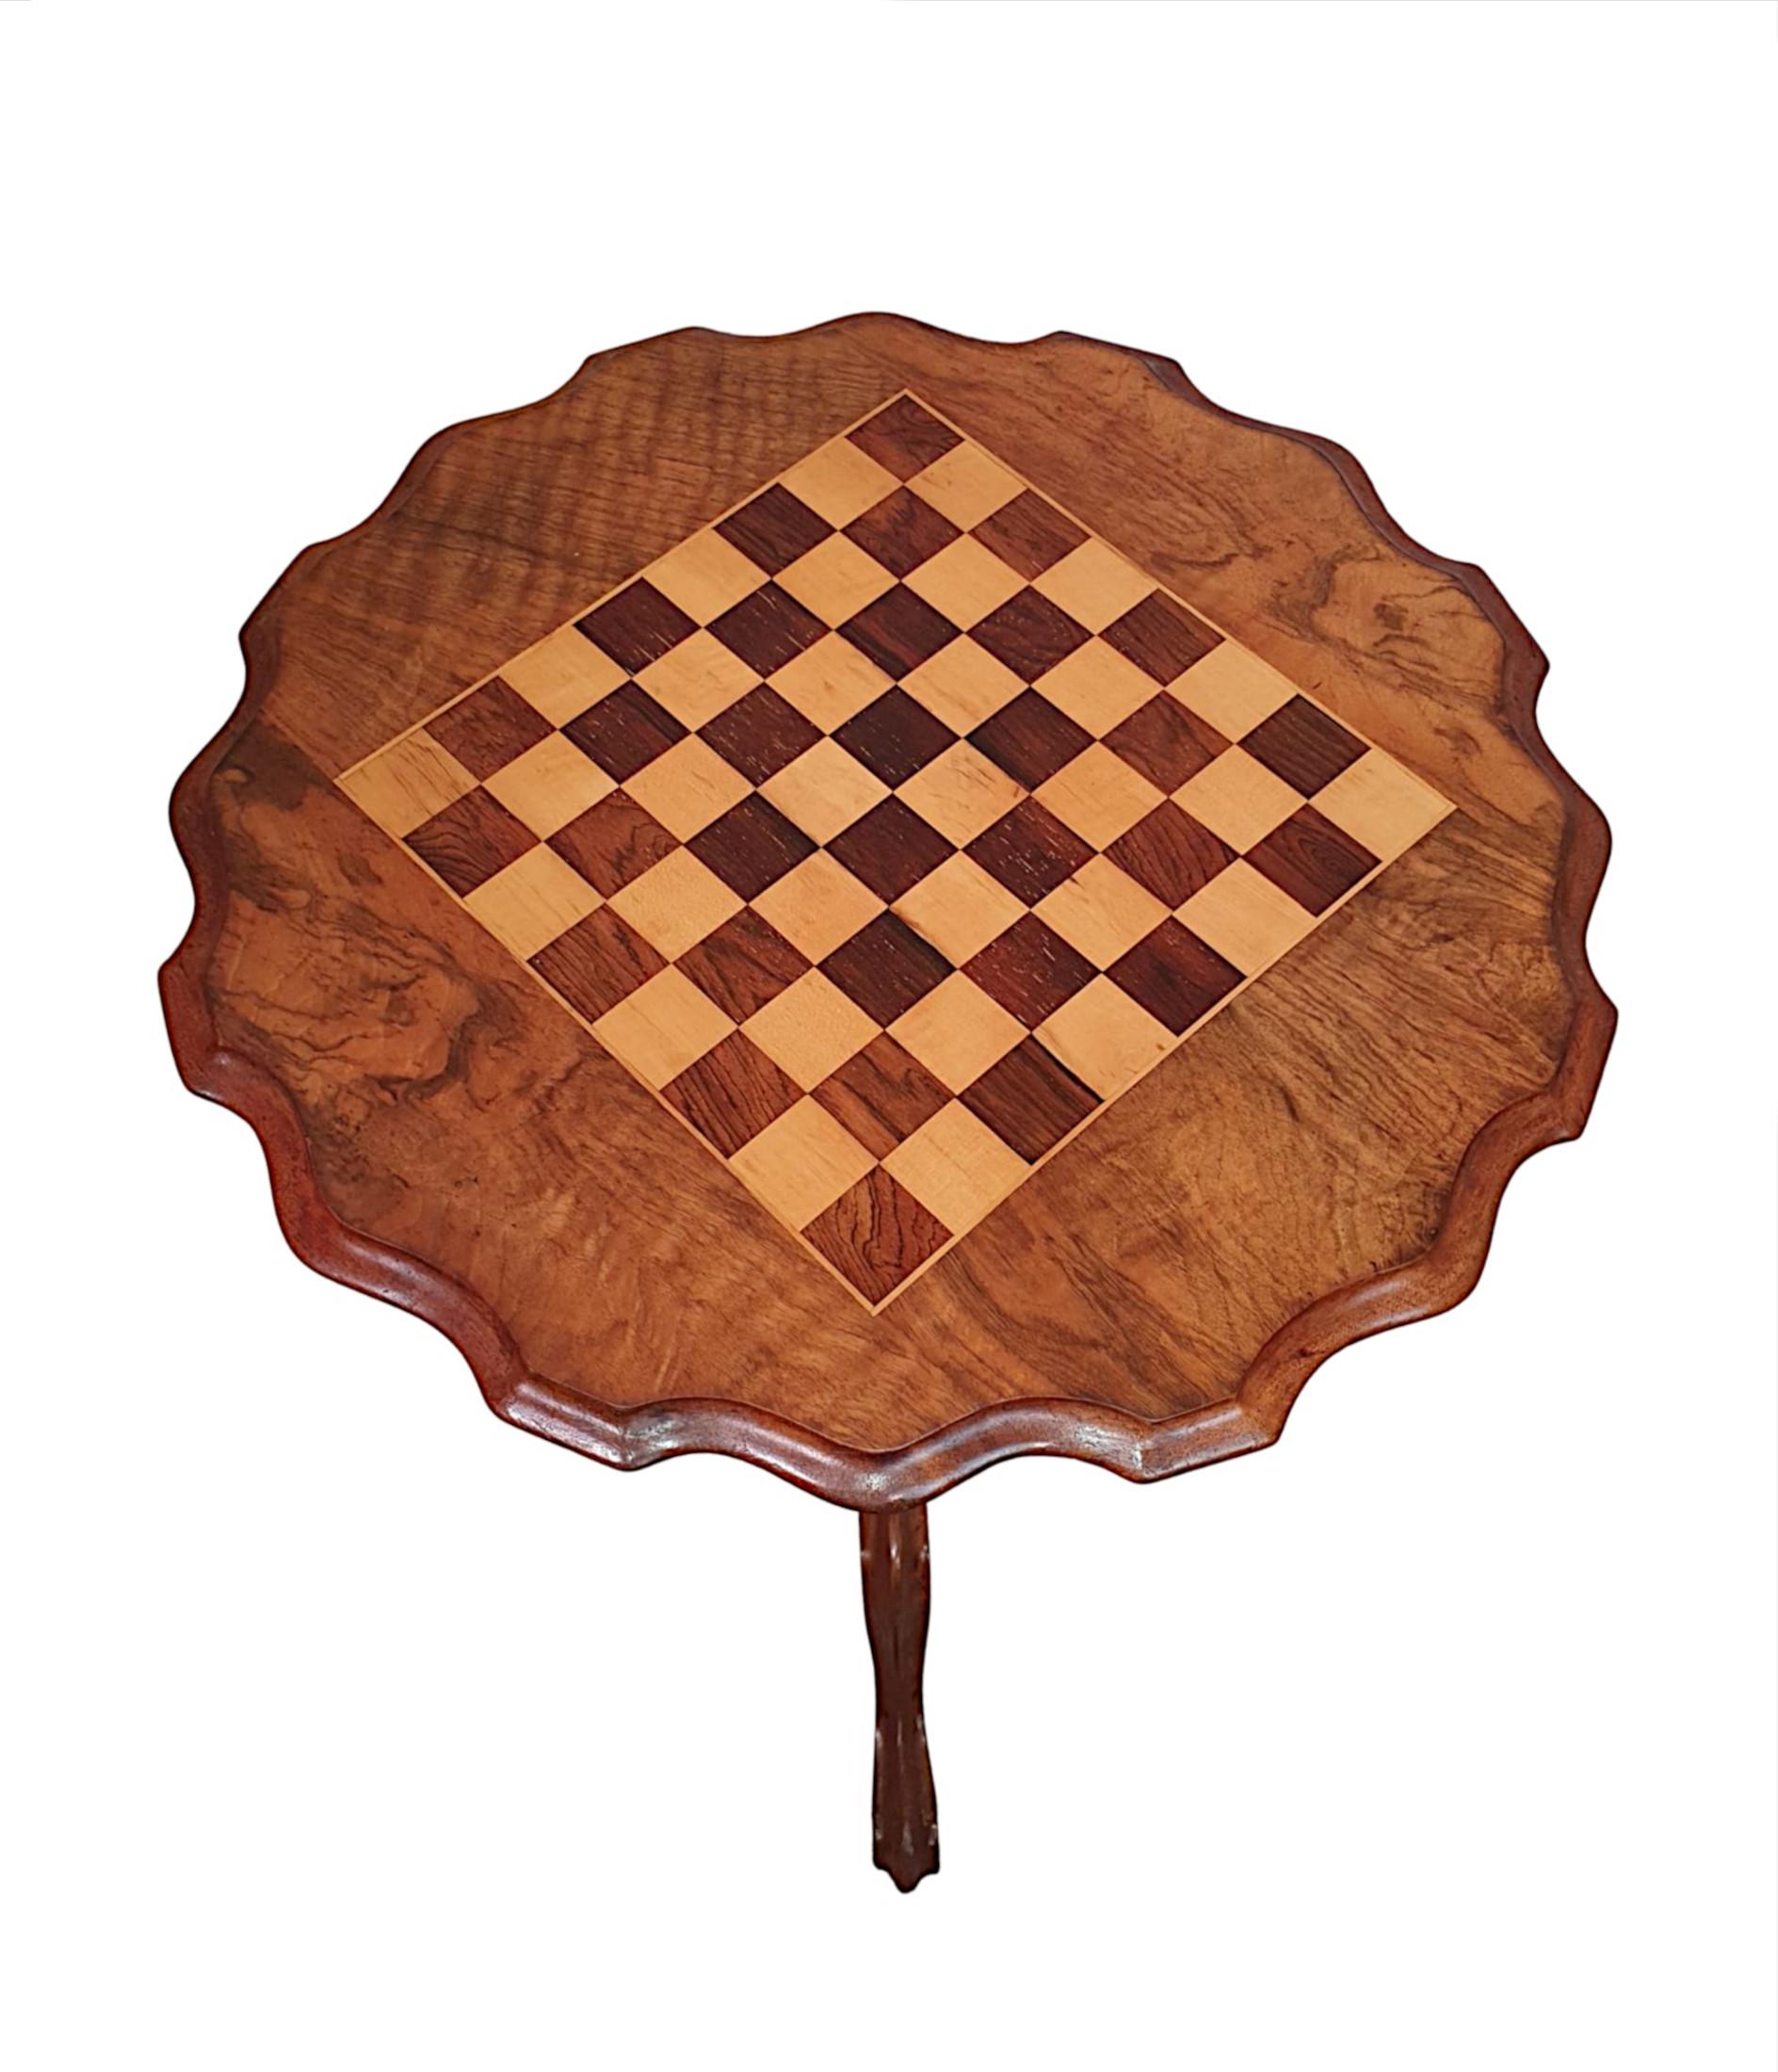 Table d'échecs en ronce de noyer et bois fruitier du XIXe siècle. Le plateau circulaire façonné et mouluré est orné de carrés de jeu d'échecs incrustés d'une marqueterie remarquable. Il est surmonté d'une colonne à balustre tournée aux détails